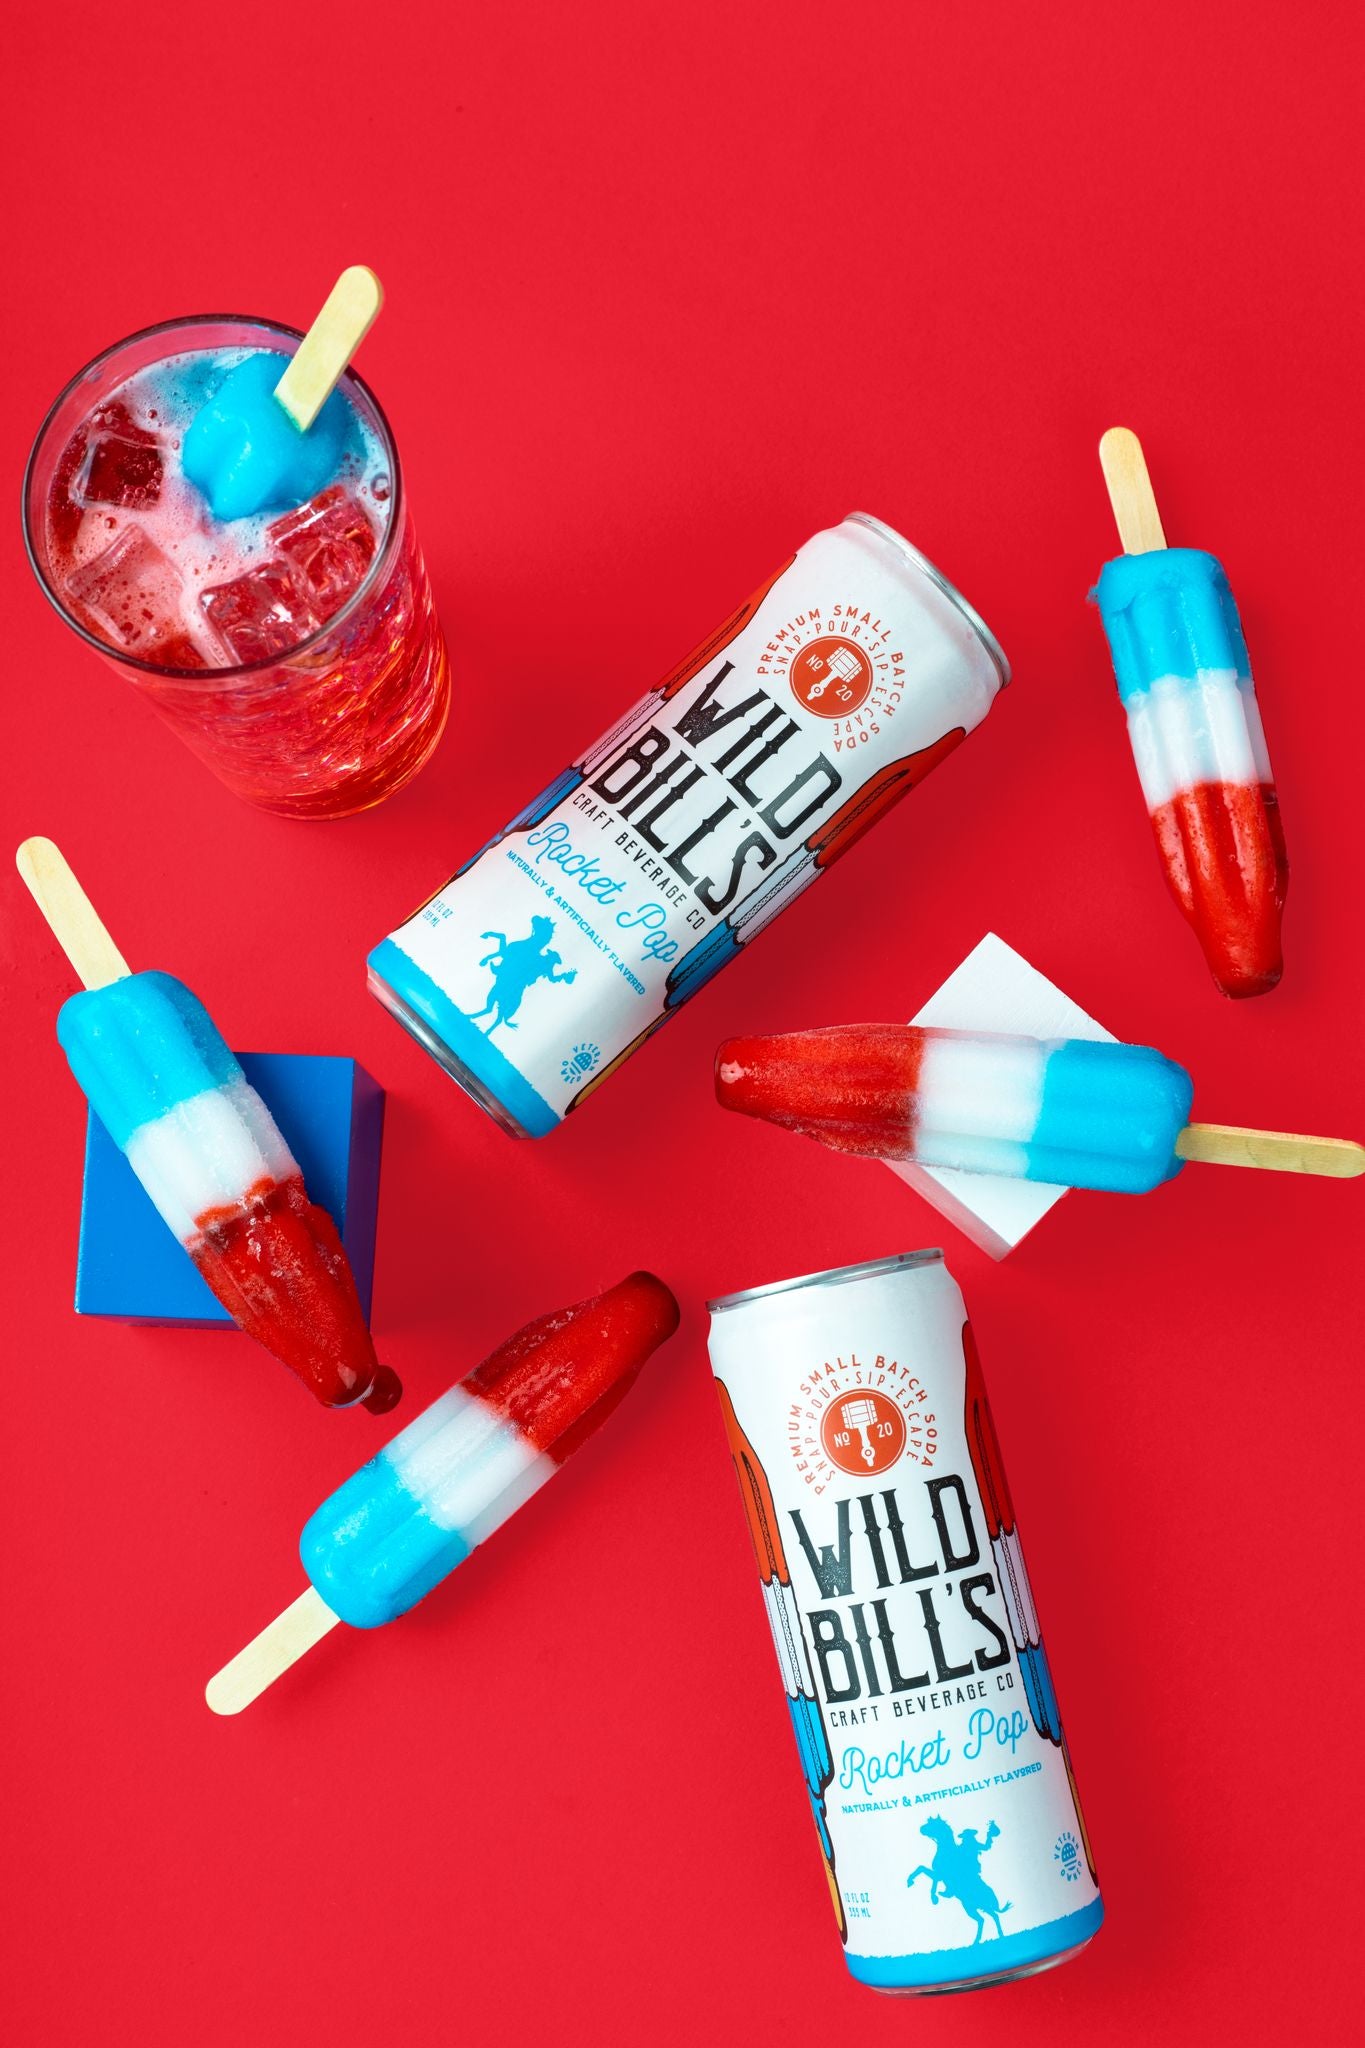 Wild Bill's Rocket Pop Soda (12 Cans) Premium Cane Sugar Pop